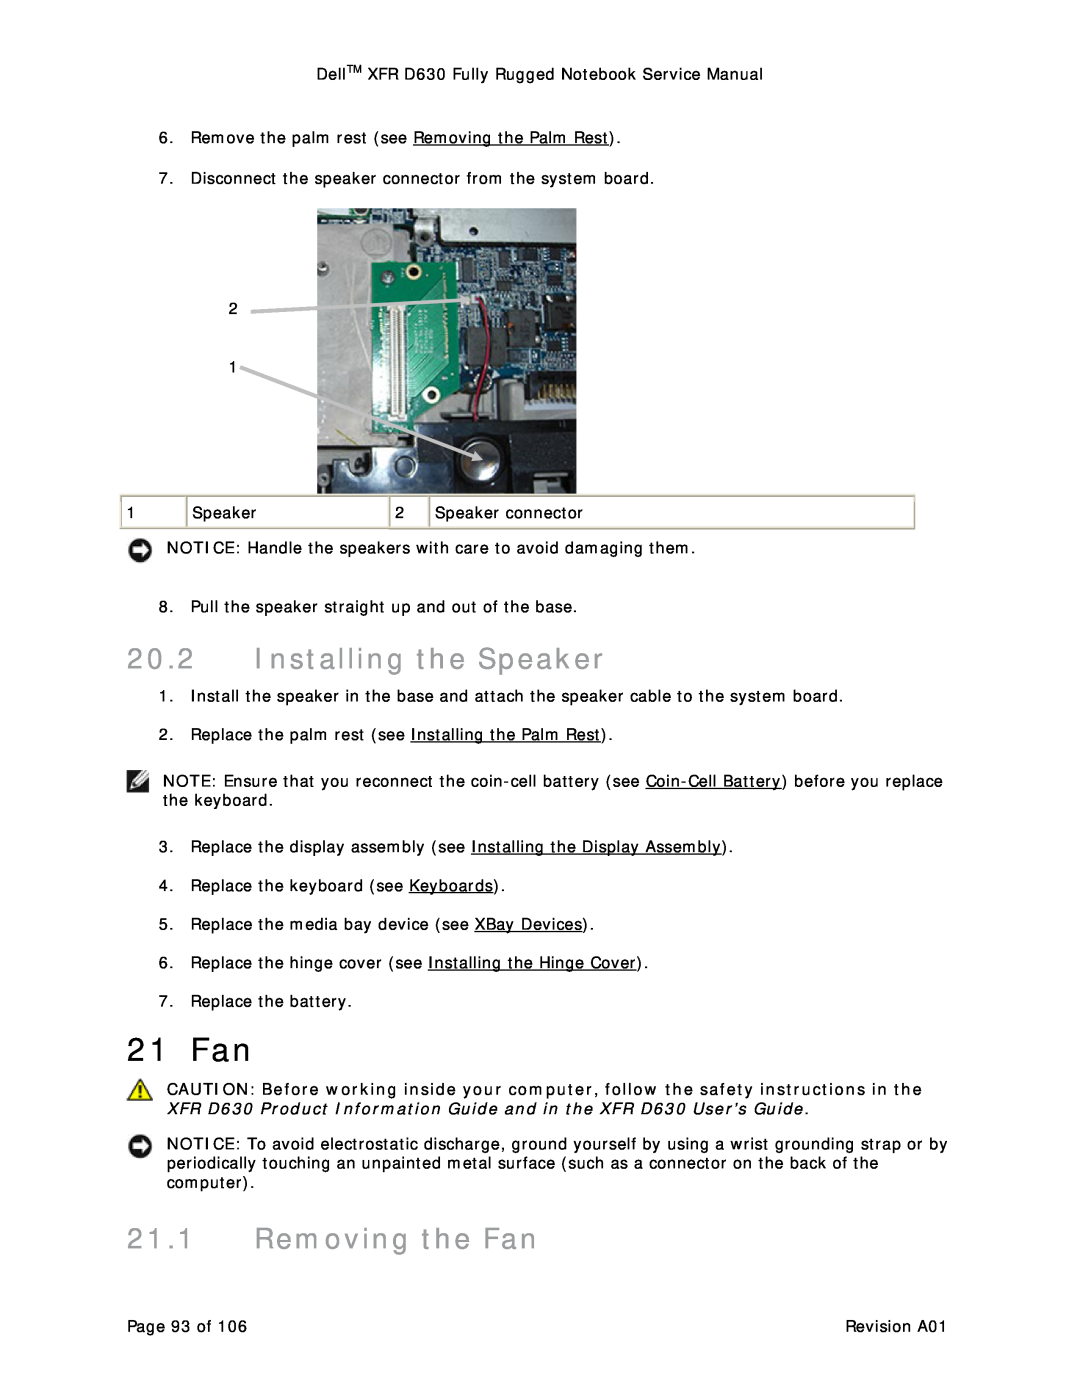 Dell D630 service manual 21 Fan, Installing the Speaker, Removing the Fan 